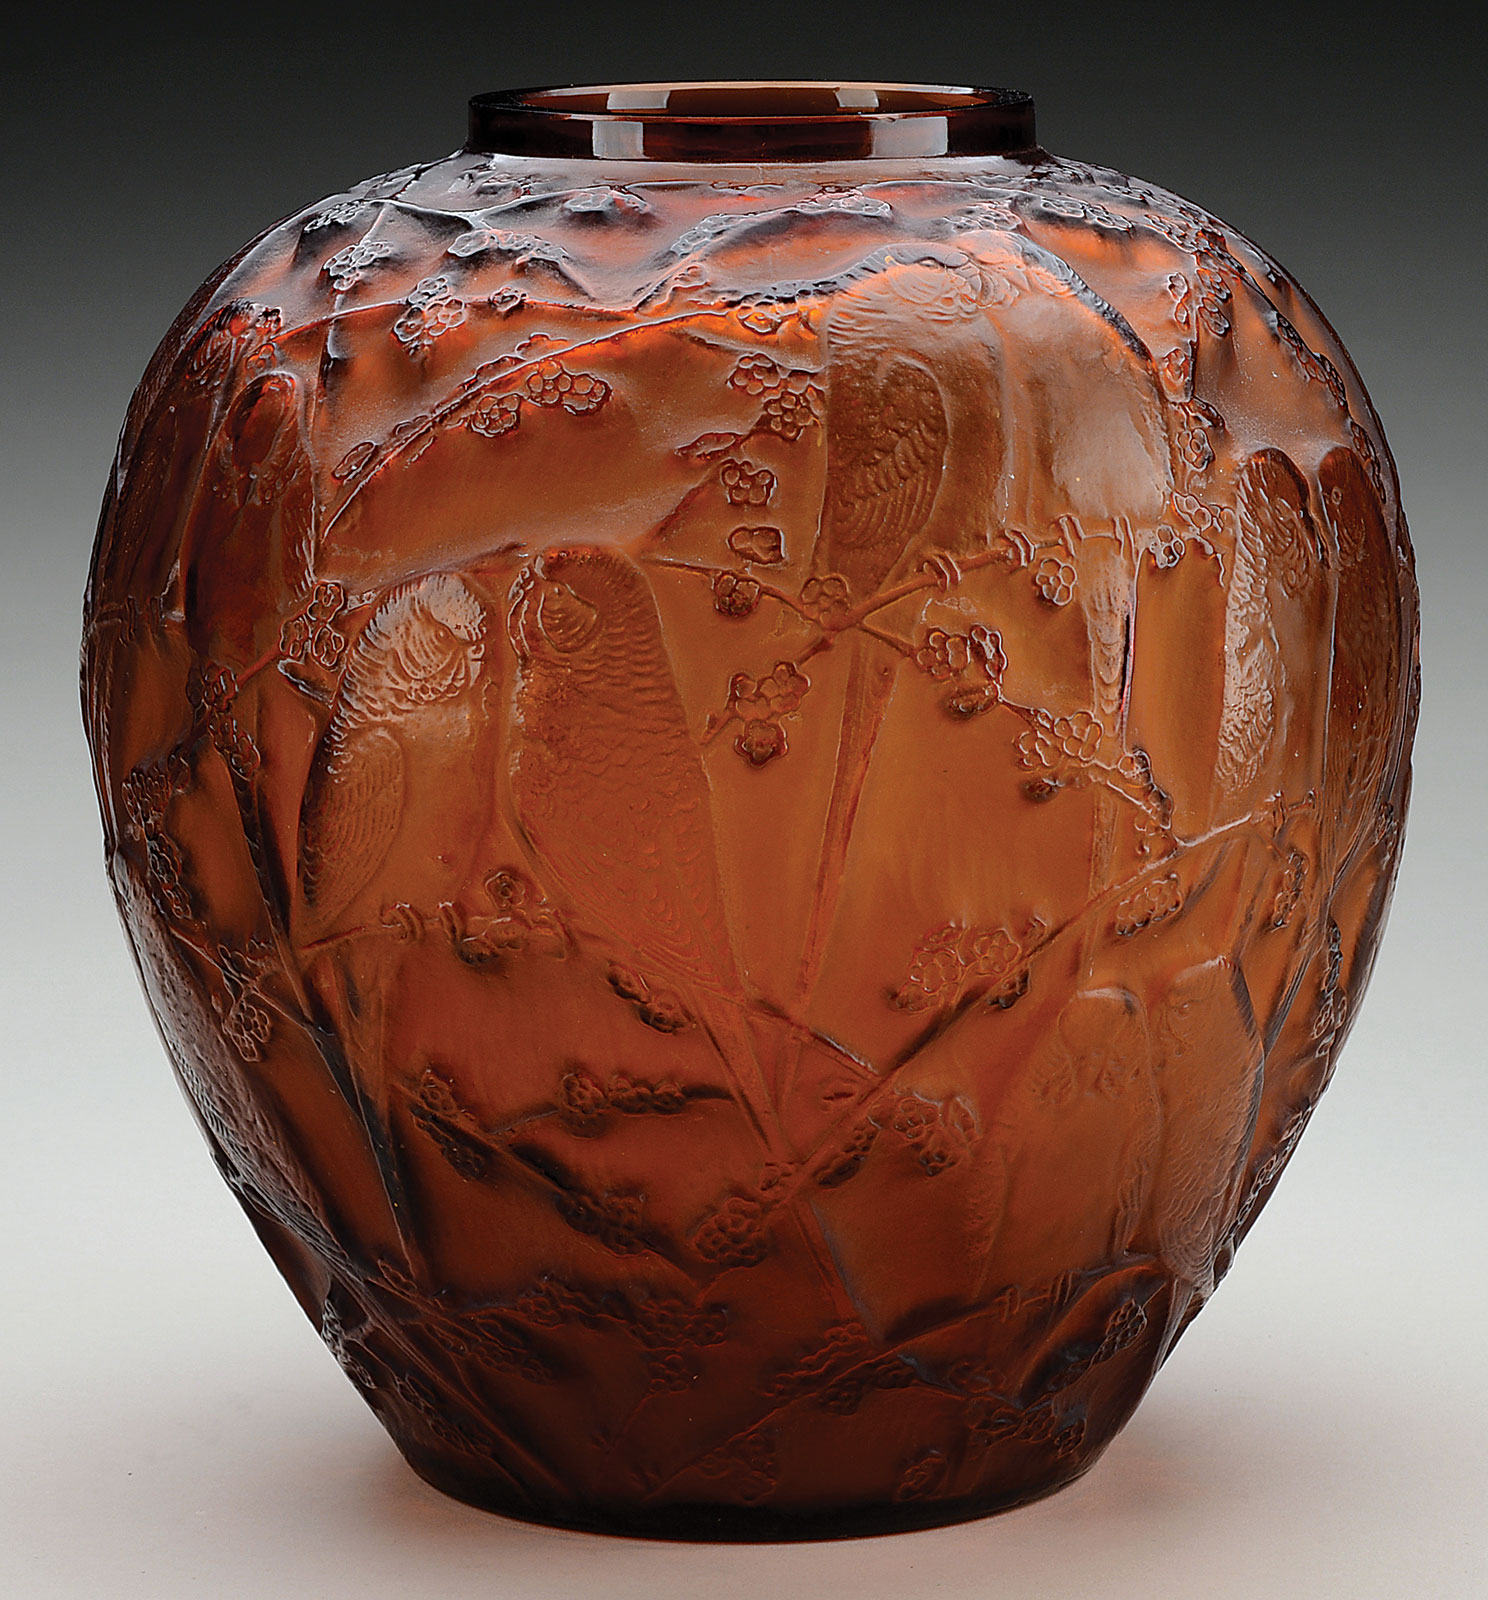 R Lalique Perruches Vase, estimated at $10,000-15,000.